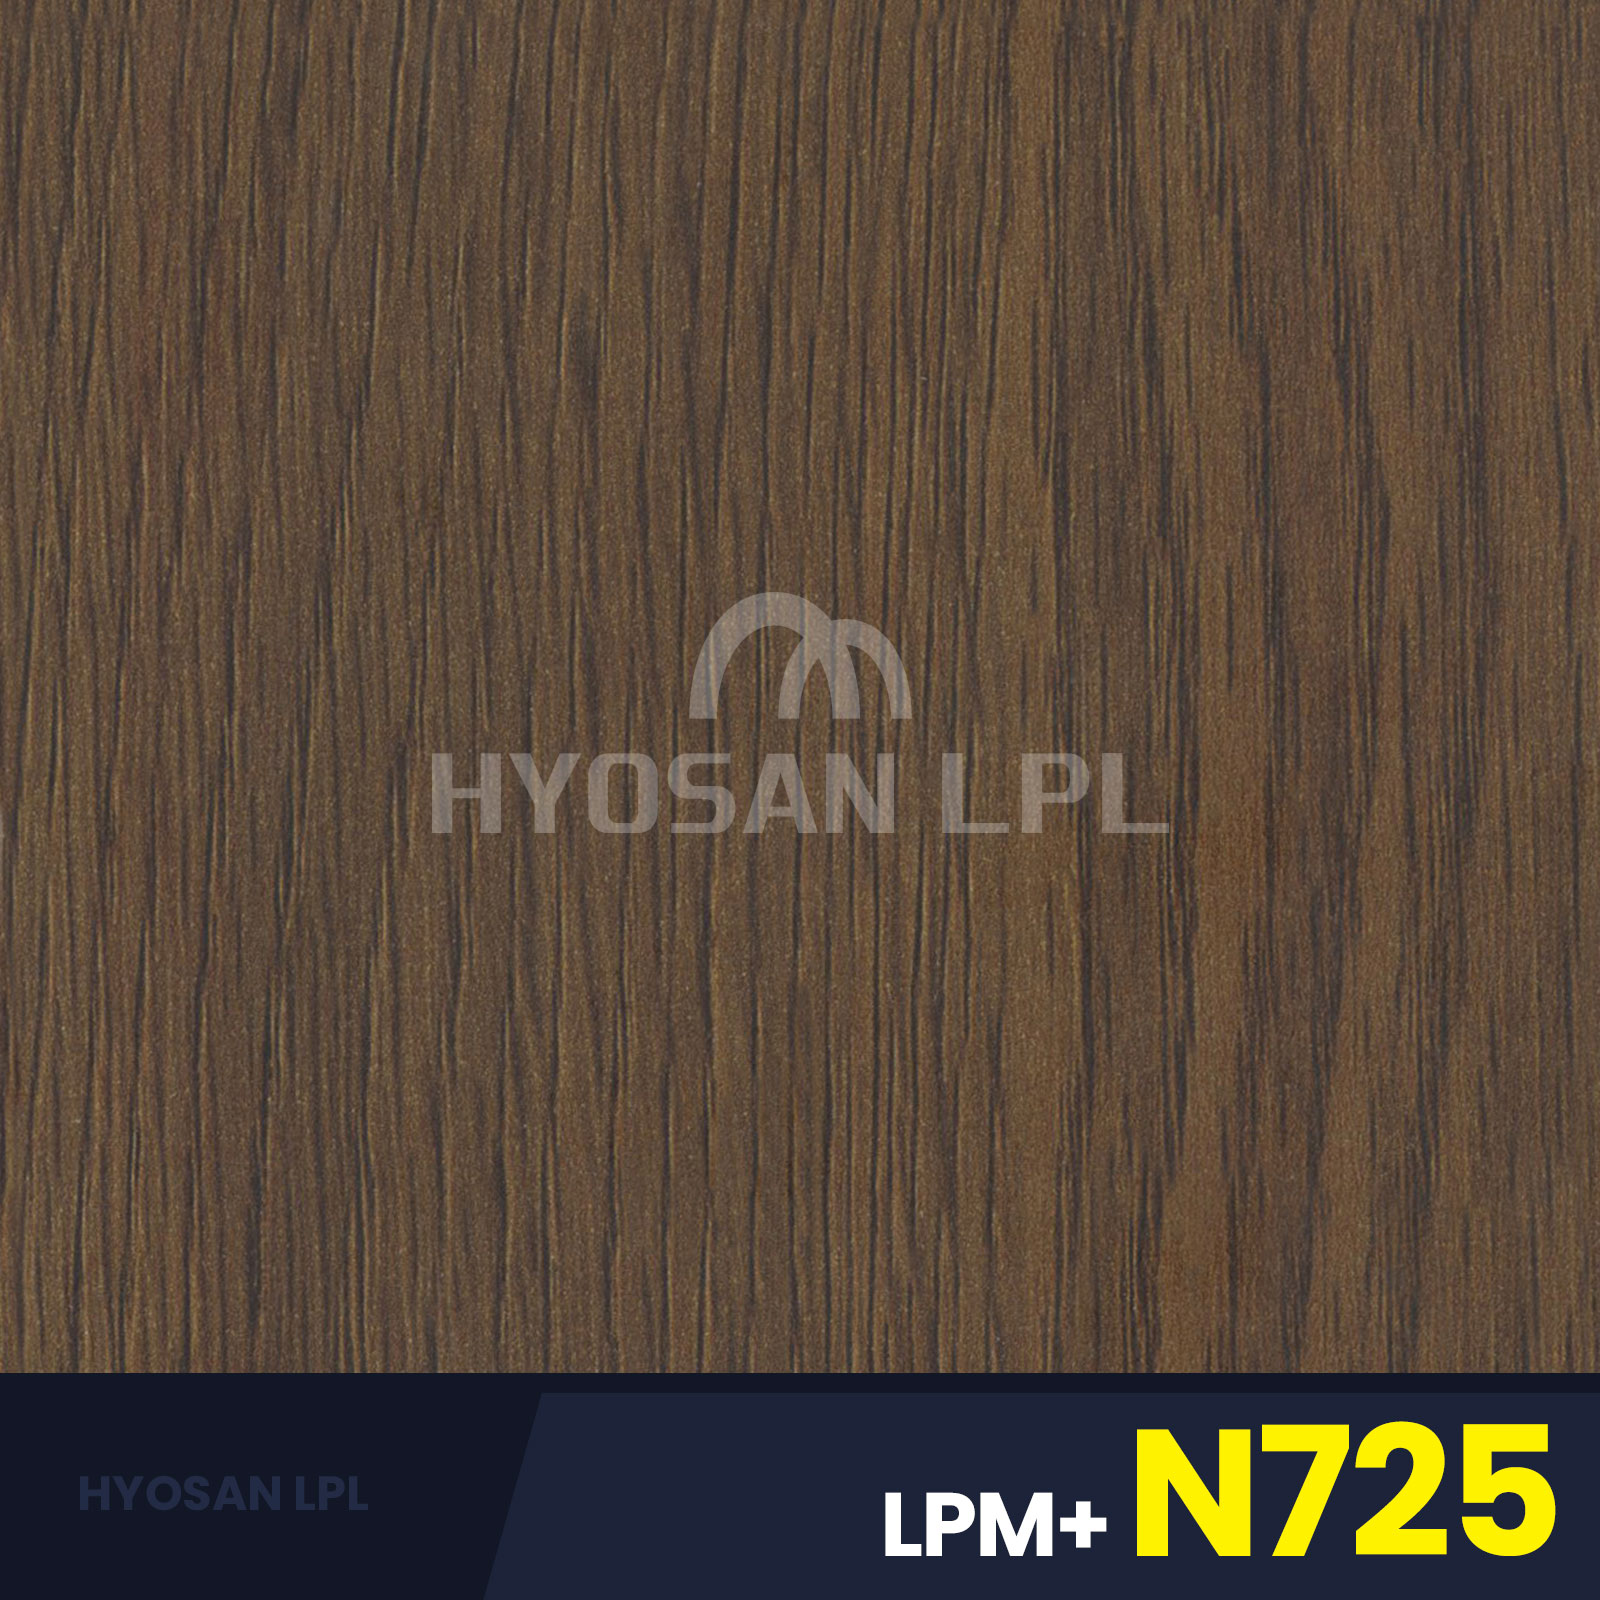 LPM+N725